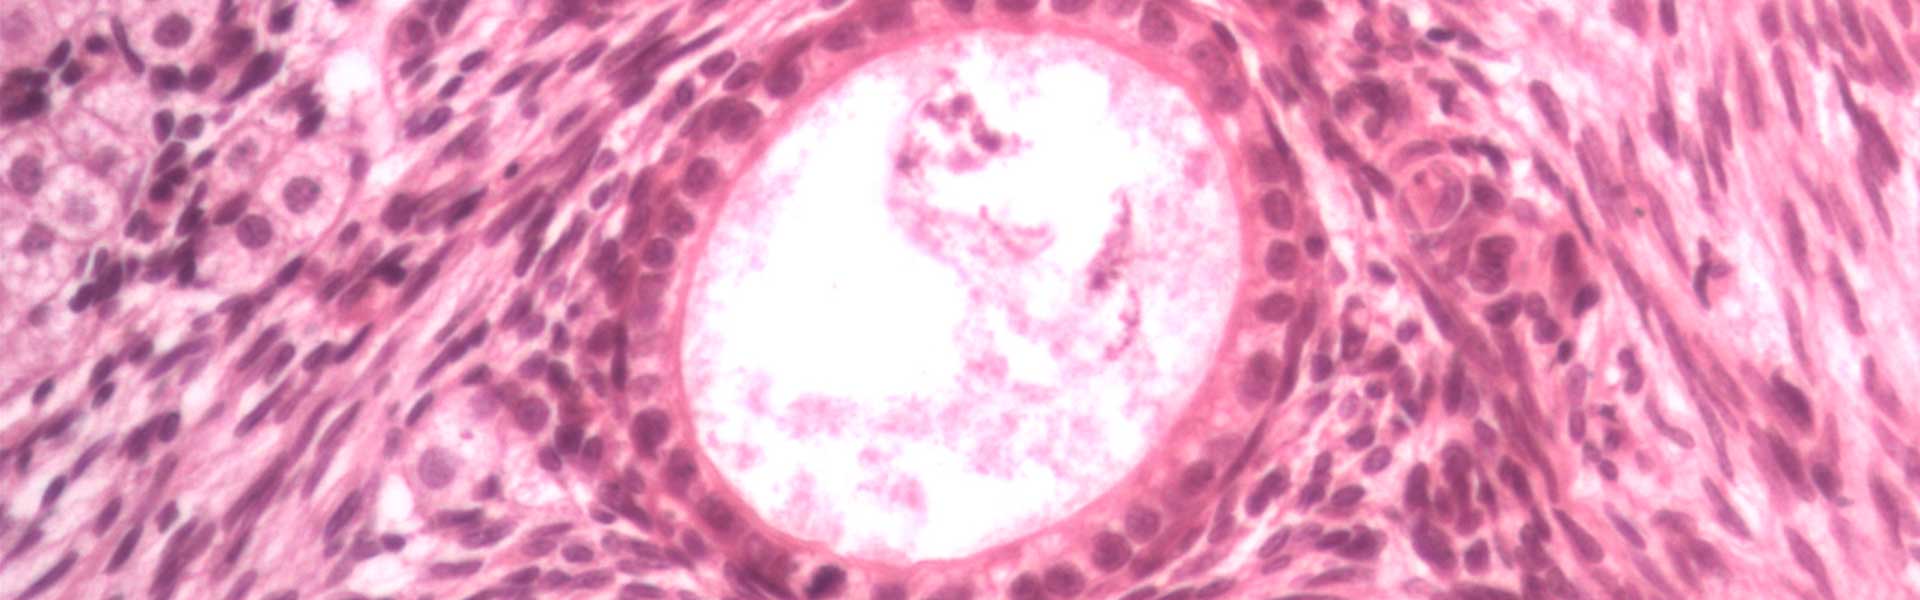 Folículo primario, ovario